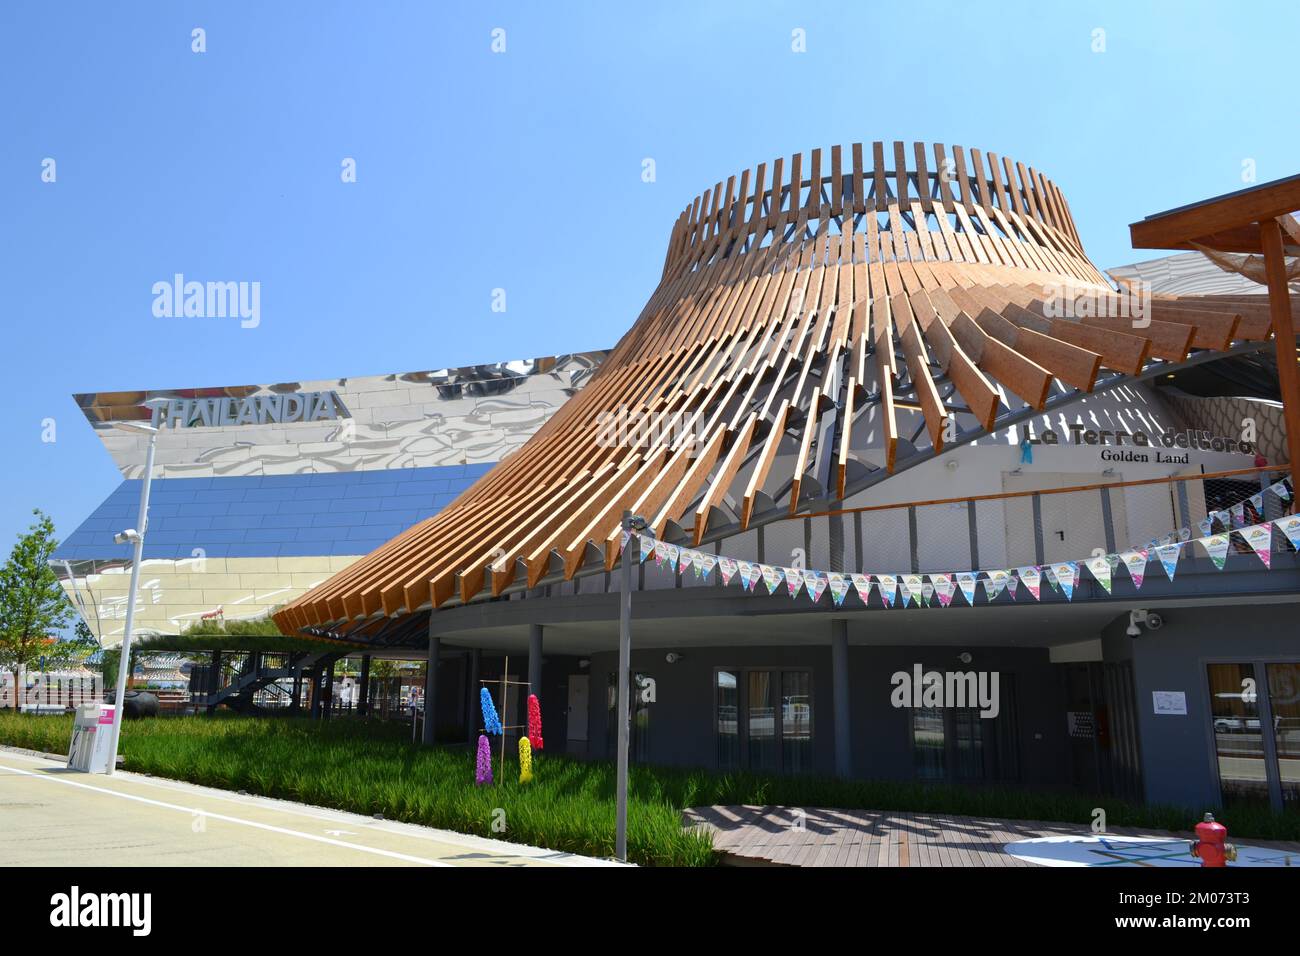 Panoramablick auf den äußeren Teil des Thailand Pavillons der EXPO Milano 2015 unter direkter und heller Sonne. Riesige Spiegelspiegel. Stockfoto